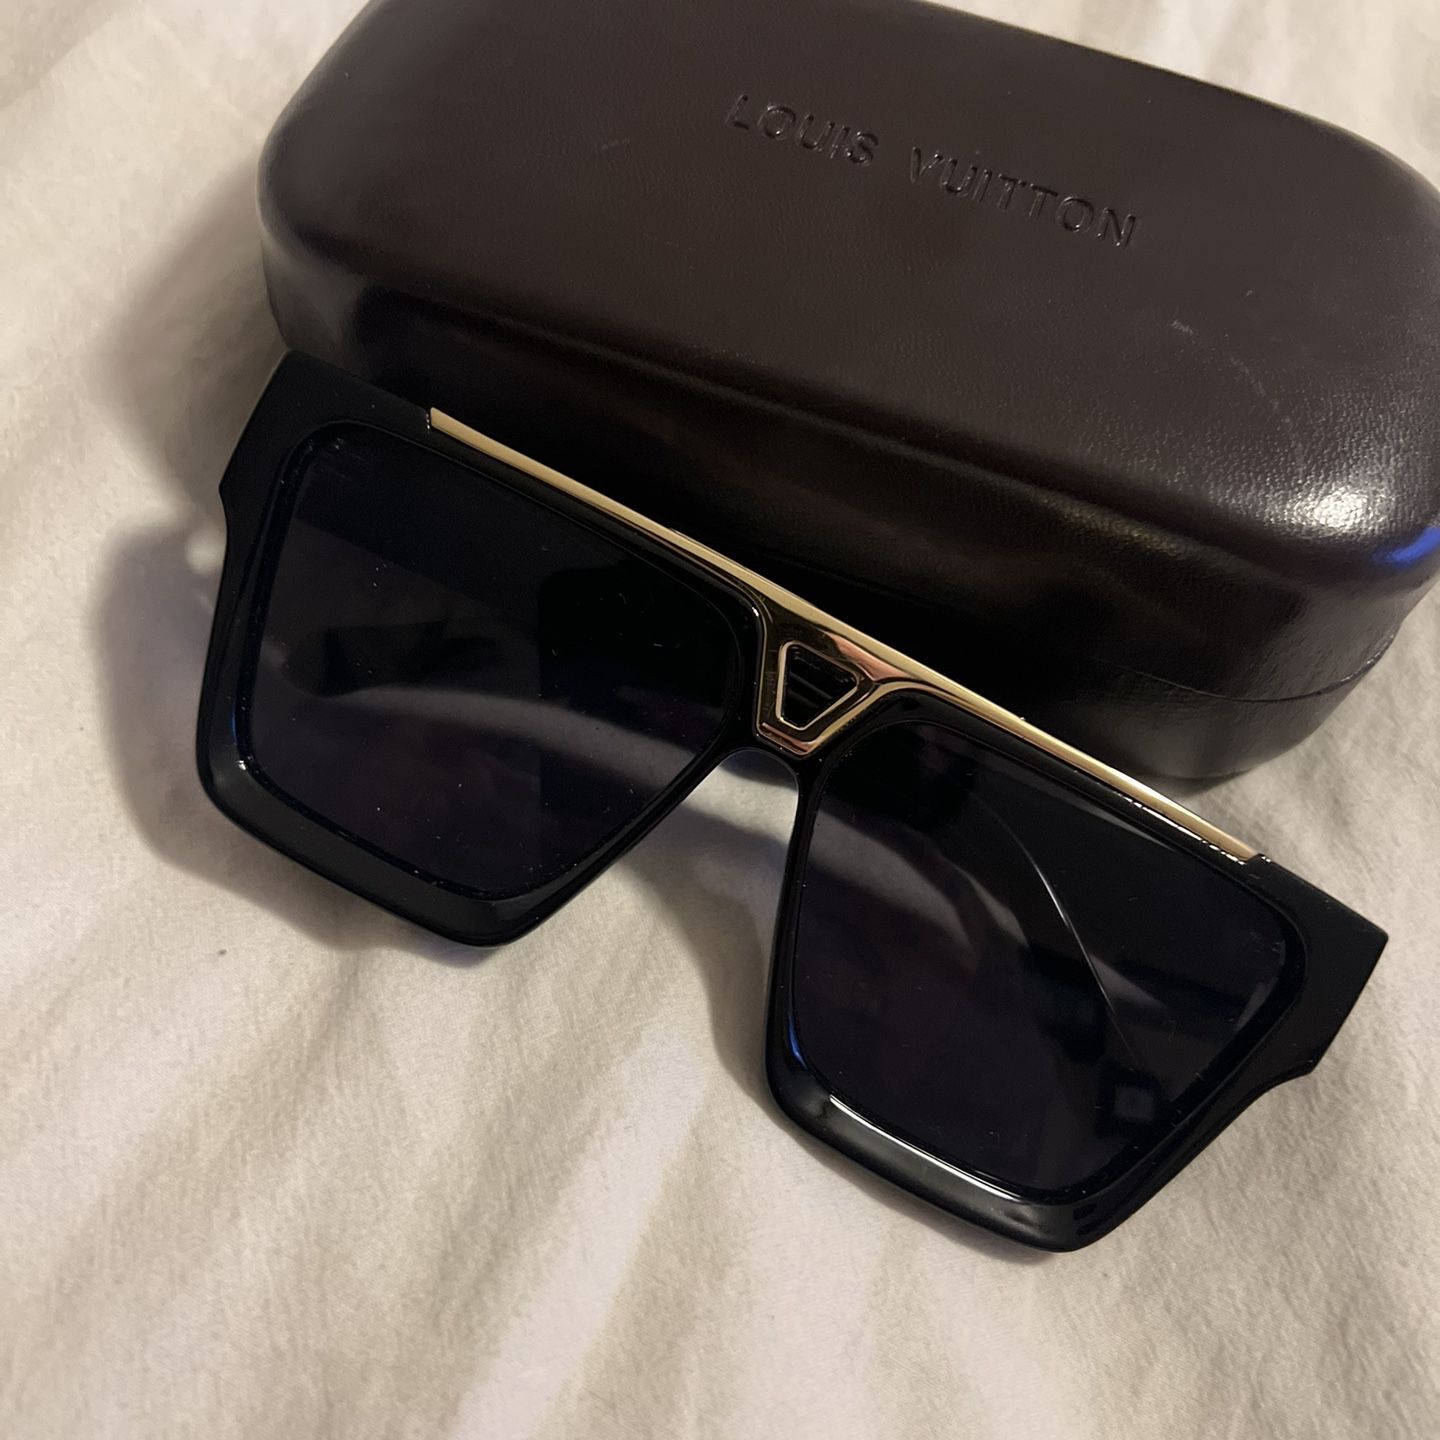 Louis Vuitton Men's Sunglasses for Sale in Mesa, AZ - OfferUp